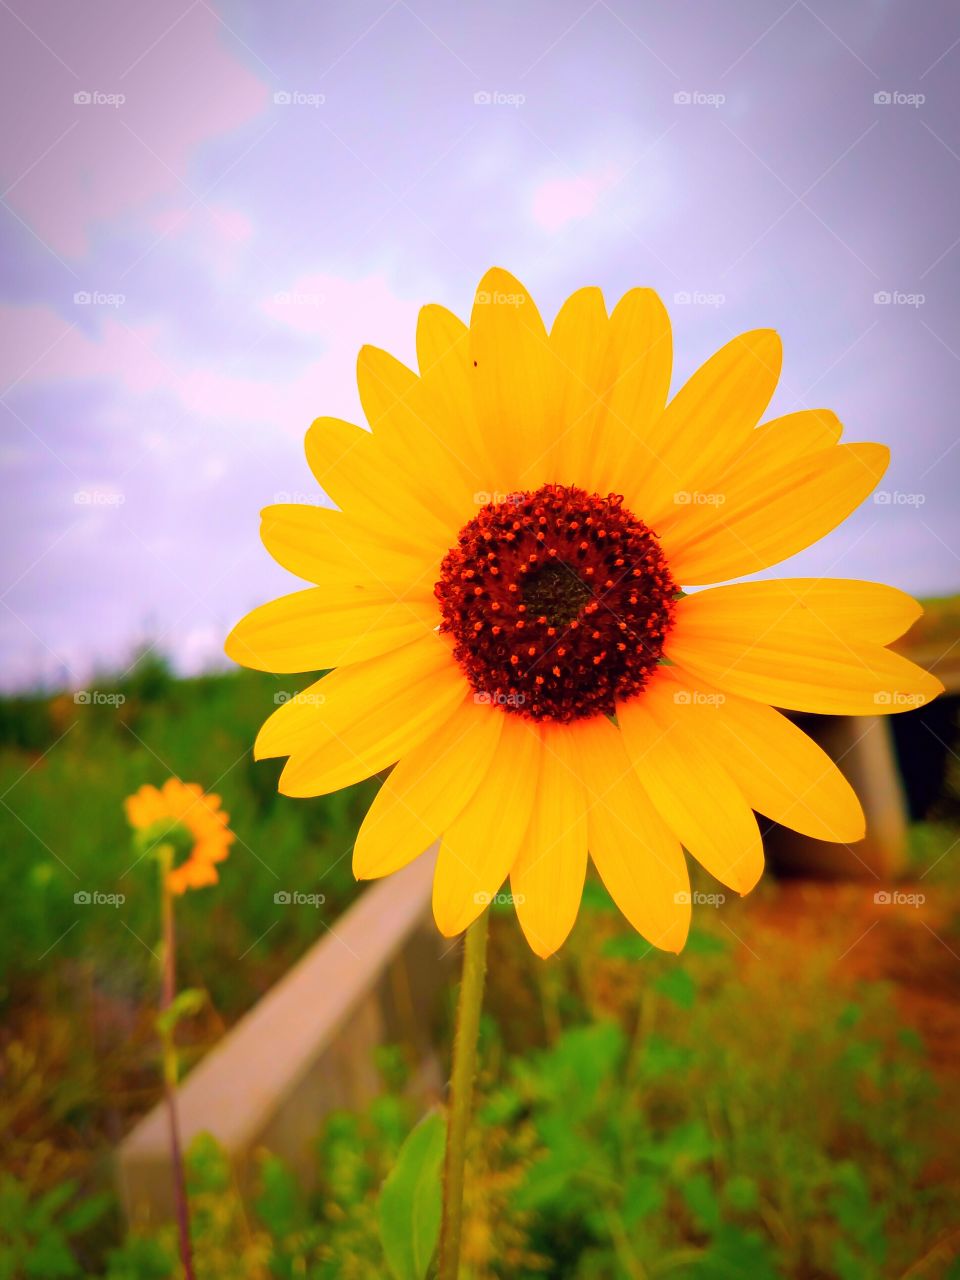 Emboldened Sunflower